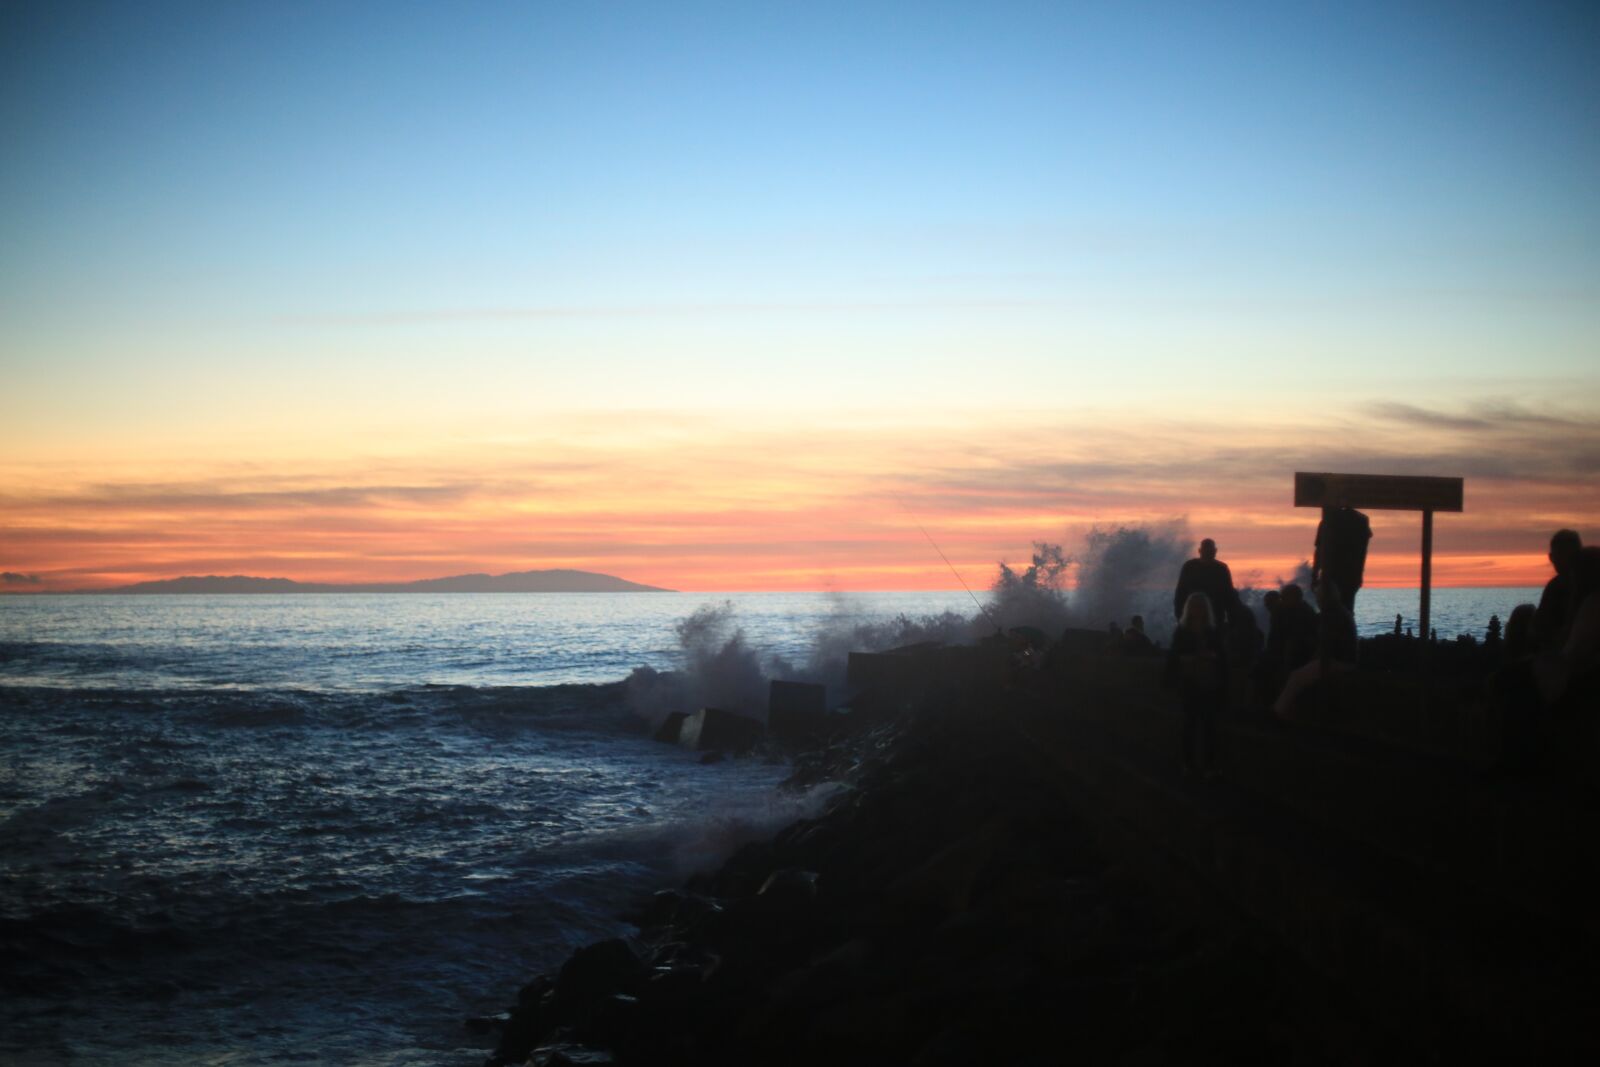 Canon EOS 5D Mark III + Canon EF 50mm F1.4 USM sample photo. Sunset, ocean, sky photography